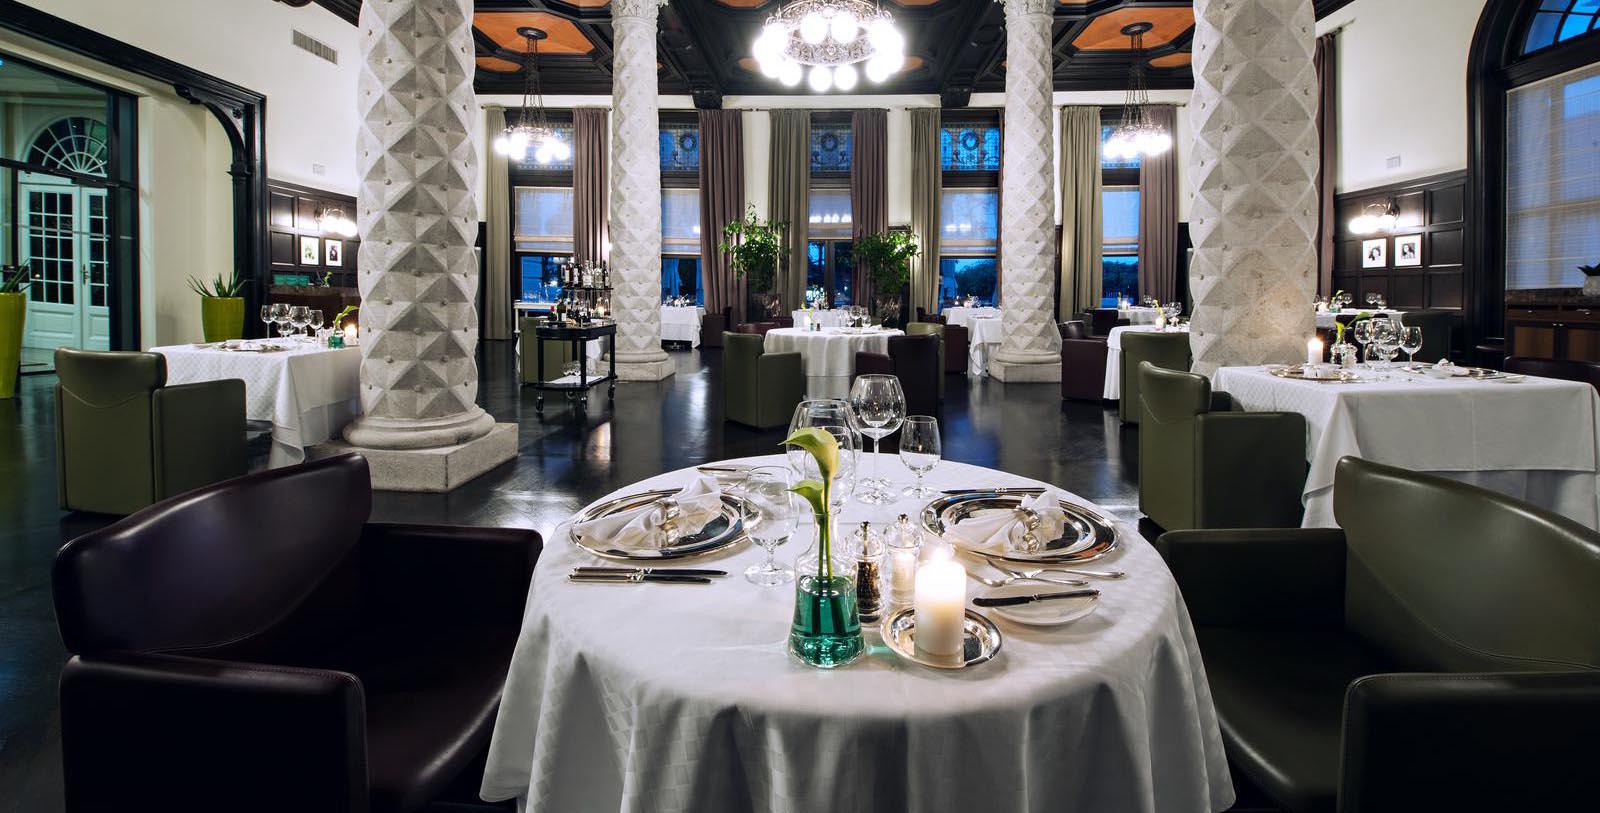 Taste refined Mediterranean cuisine at Restaurant Sophia, the signature restaurant of this historic hotel.